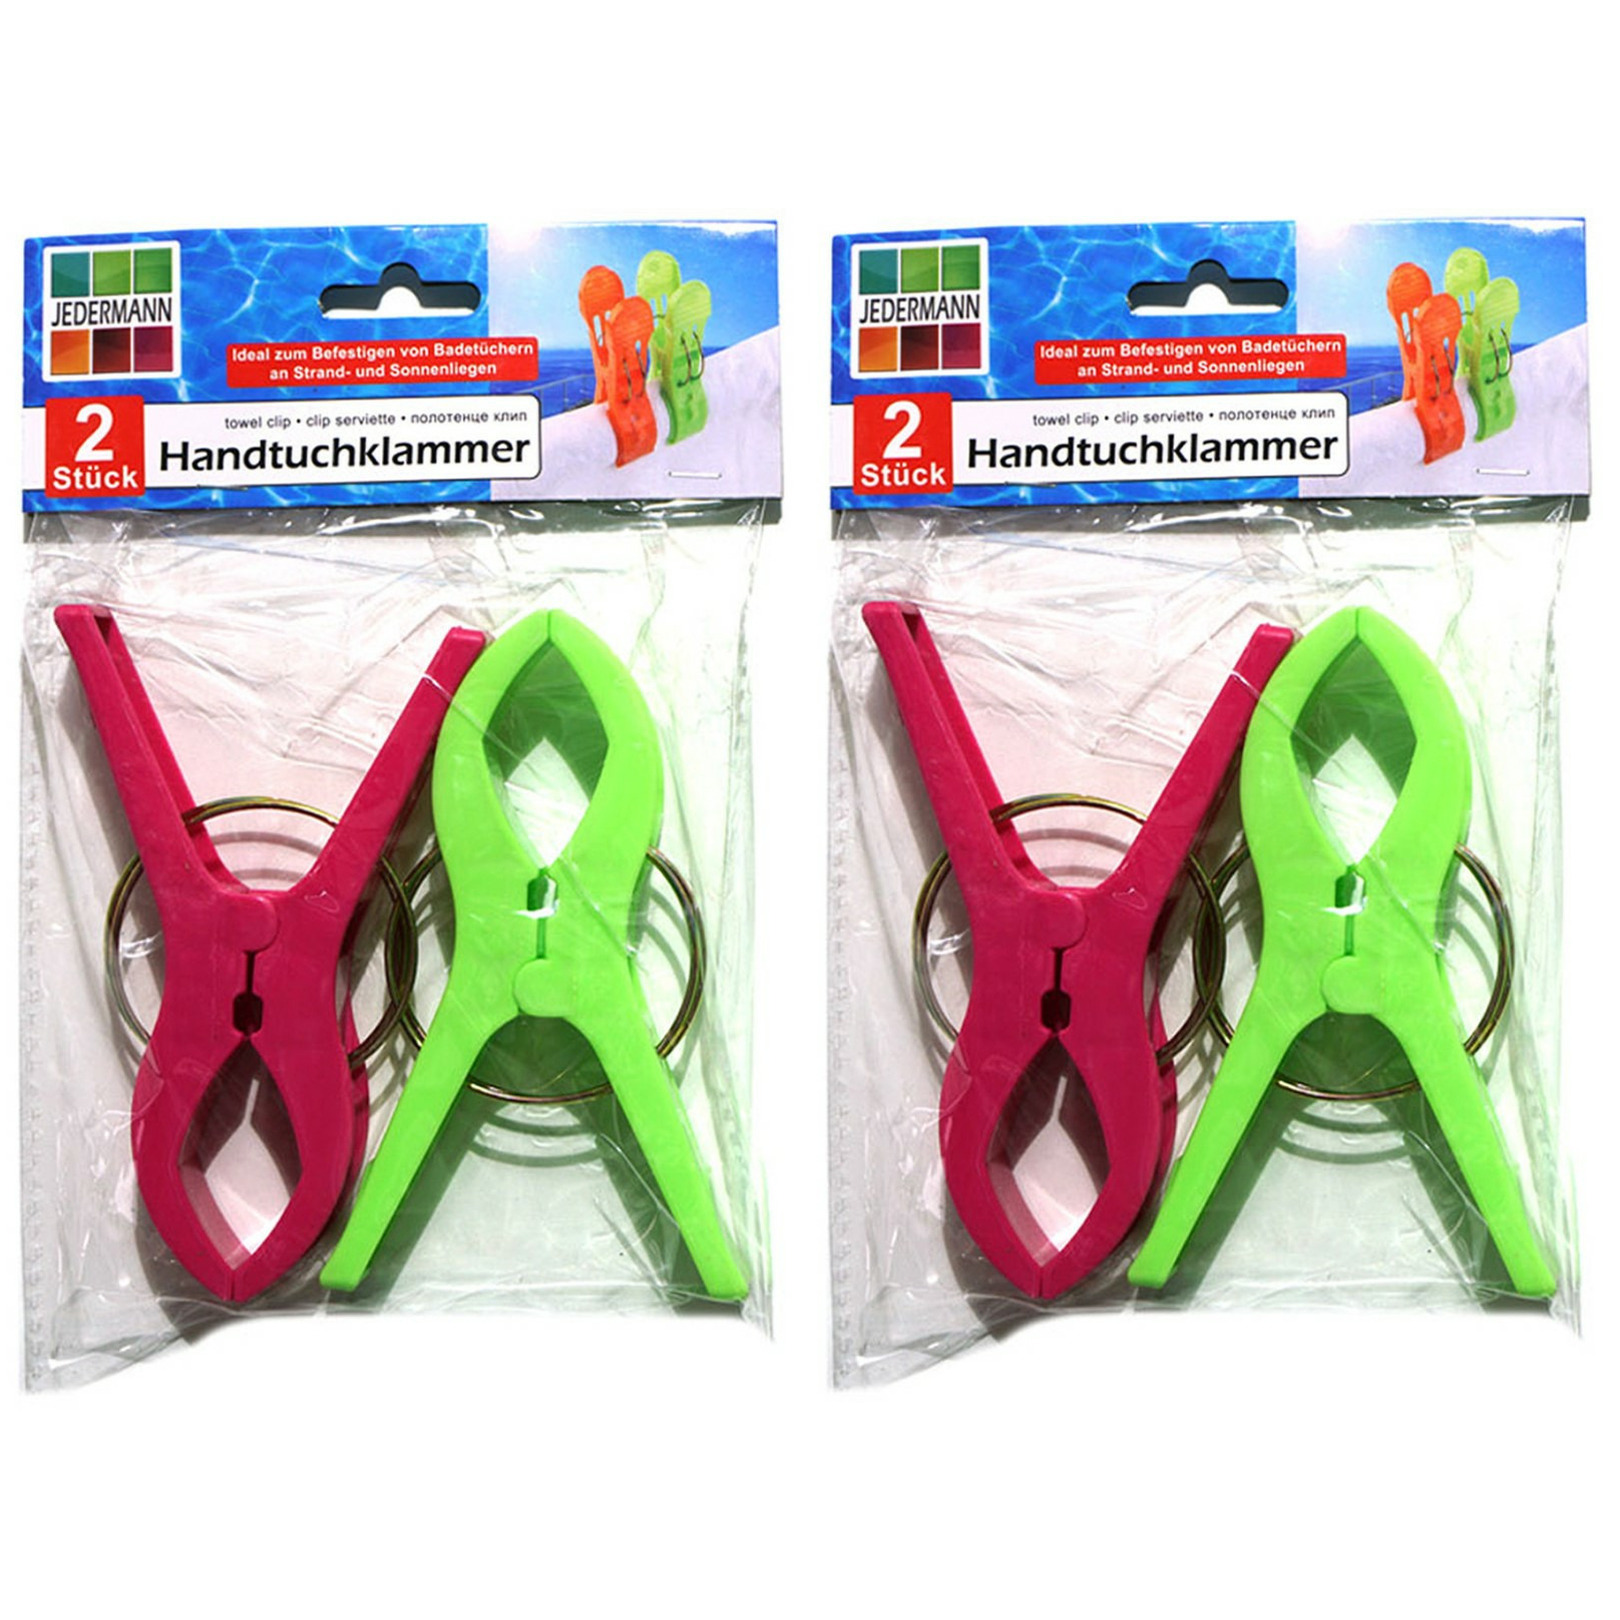 Handdoekknijpers XL 4x groen-roze kunststof 12 cm wasknijpers